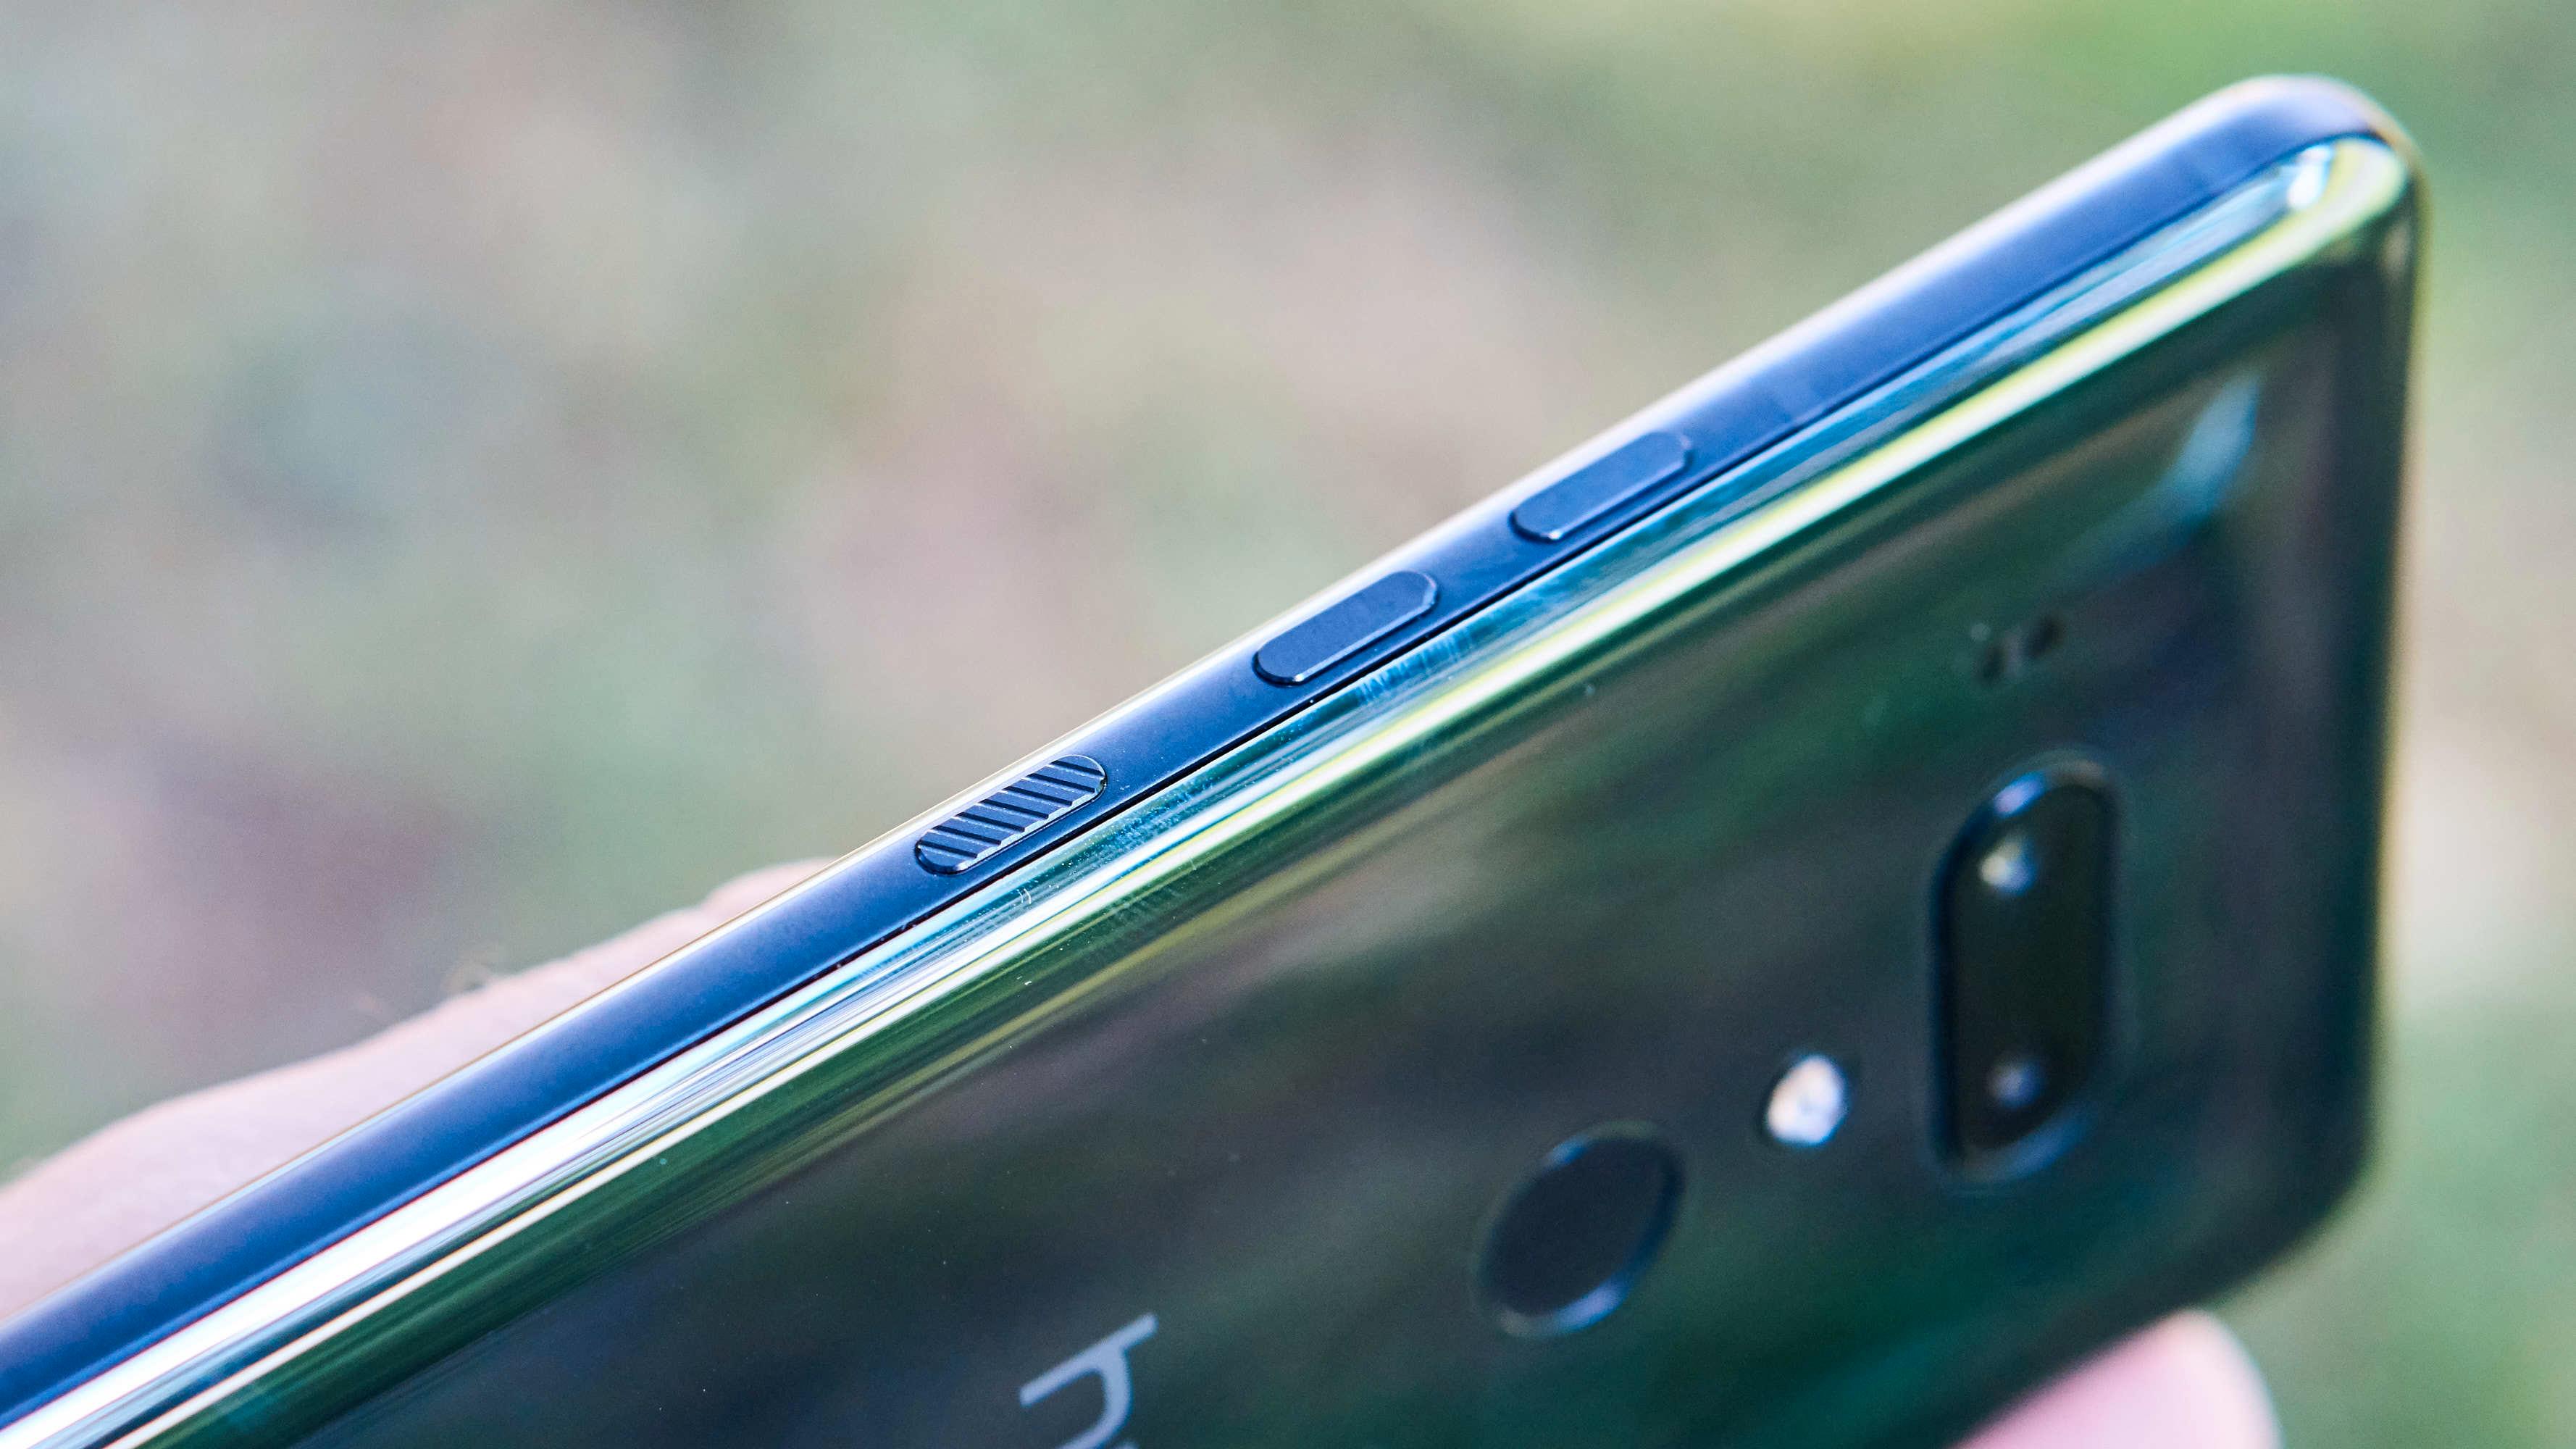 HTC U12+ har jukseknapper på siden. Disse er ikke faktiske knapper, men trykkfølsomme områder på telefonen. Meizu har valgt en liknende løsning for Zero.